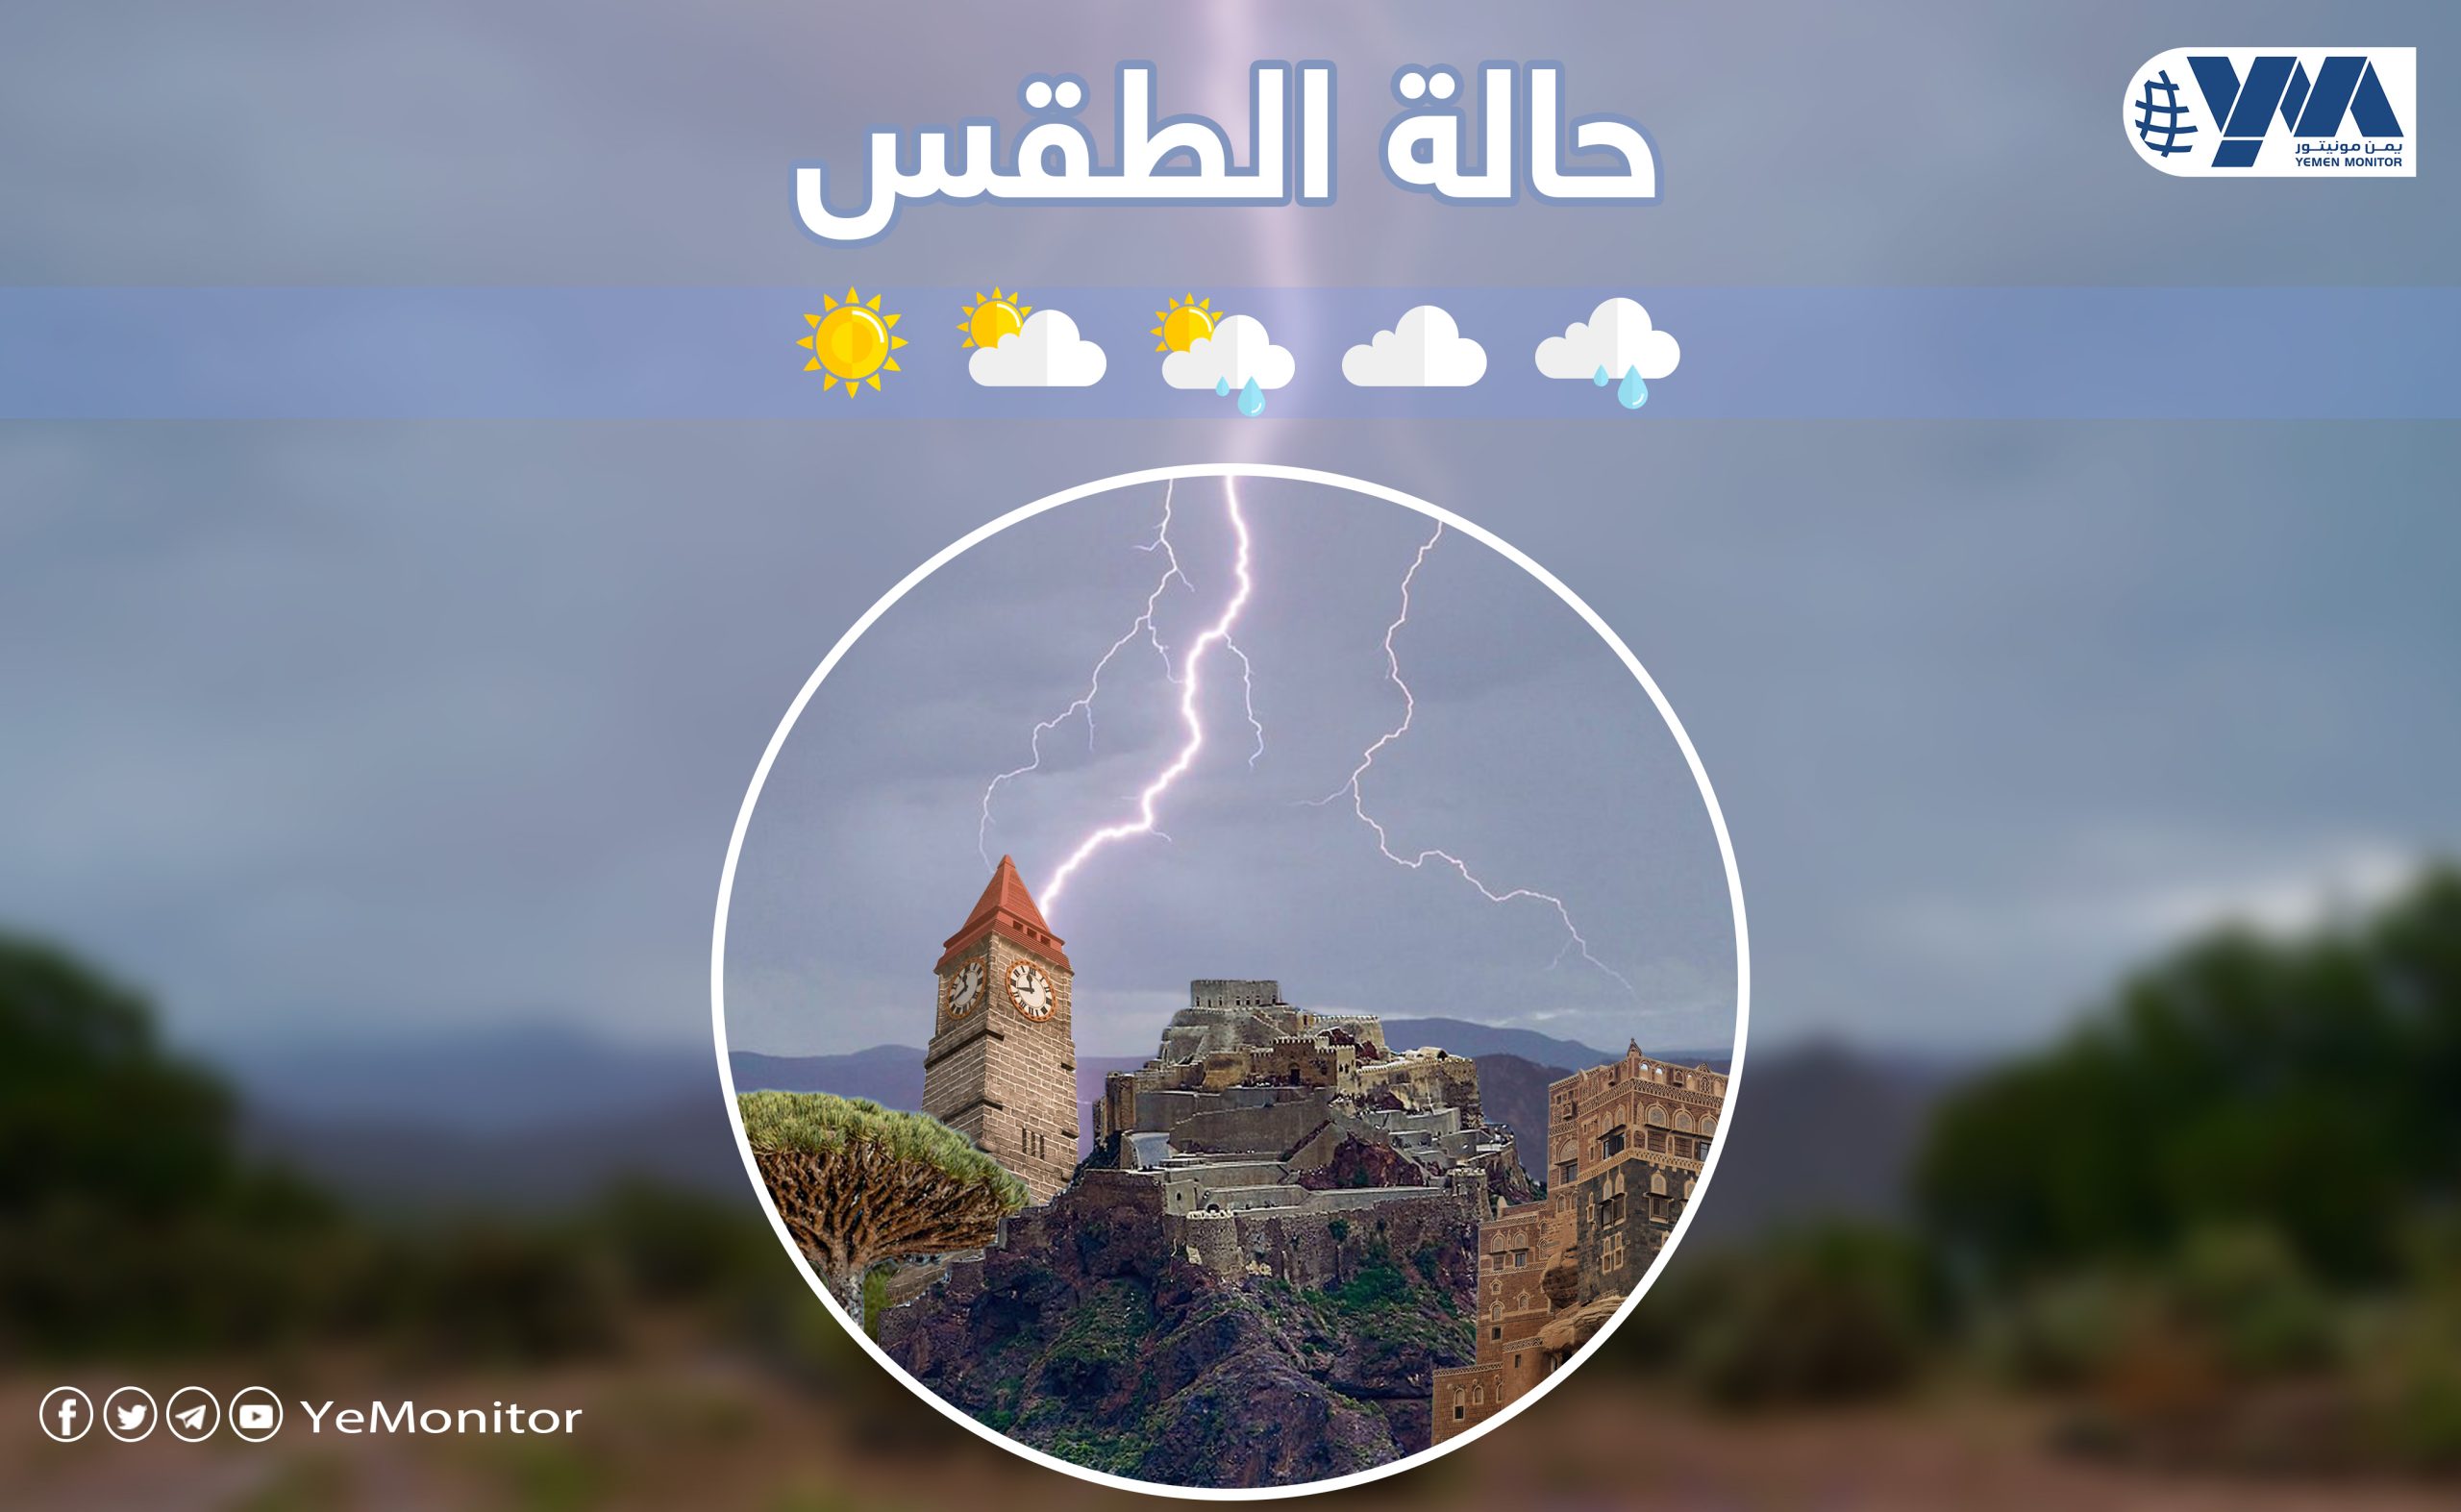 الأرصاد اليمني يتوقع هطول أمطار متفرقة وأجواء حارة خلال الساعات القادمة  